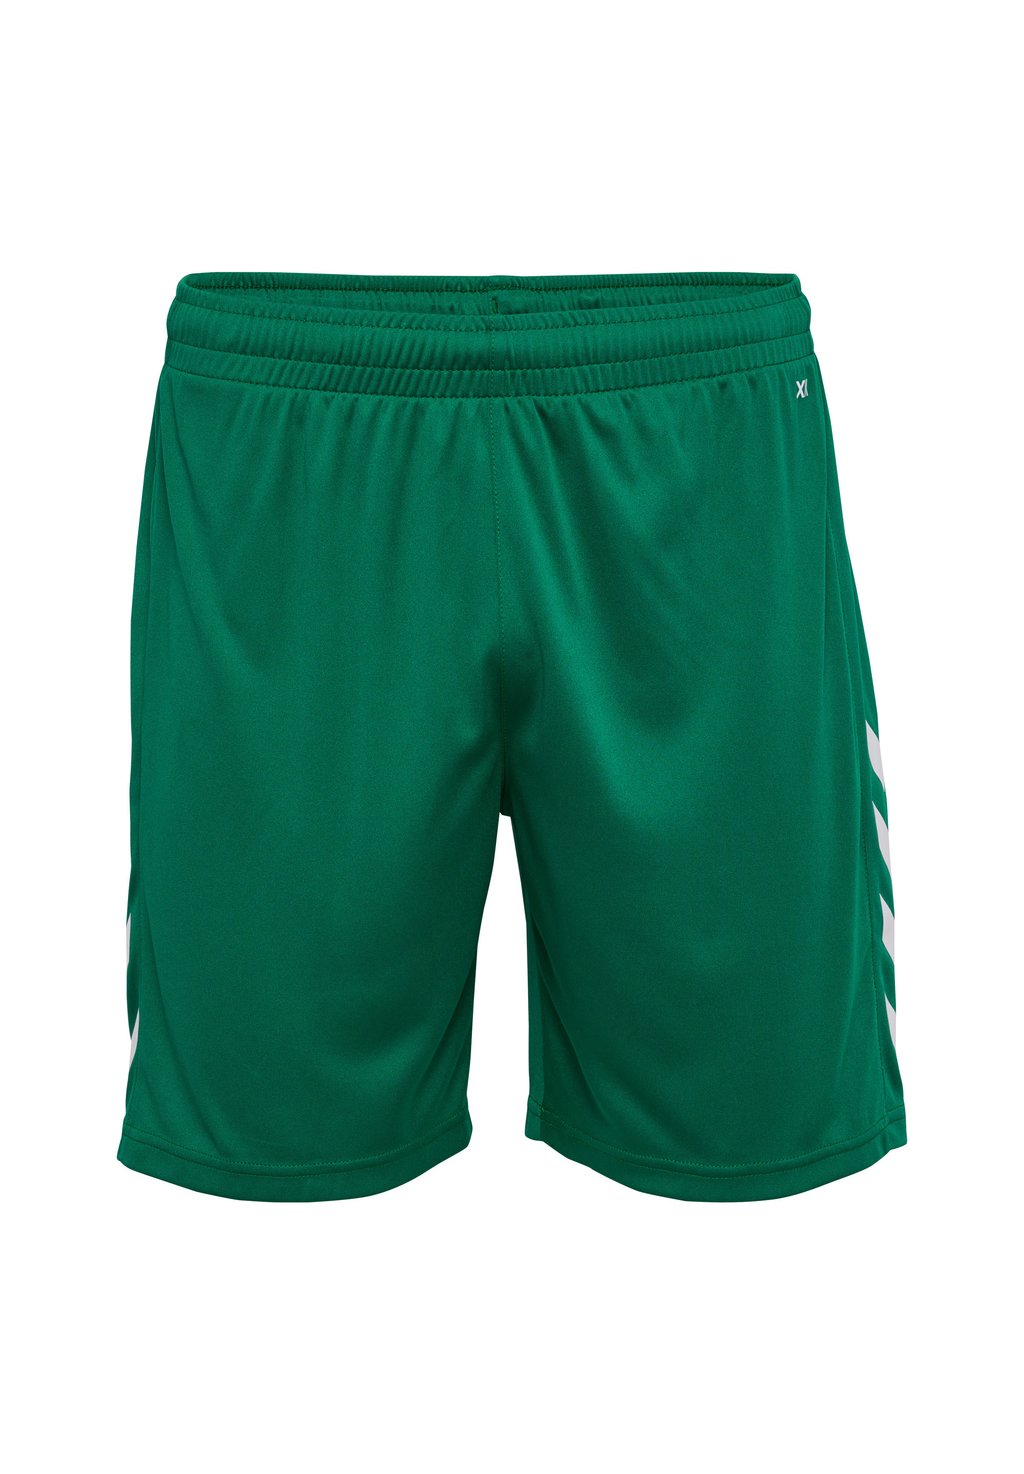 Спортивные шорты CORE XK POLY Hummel, цвет evergreen спортивные шорты core xk poly hummel цвет acai